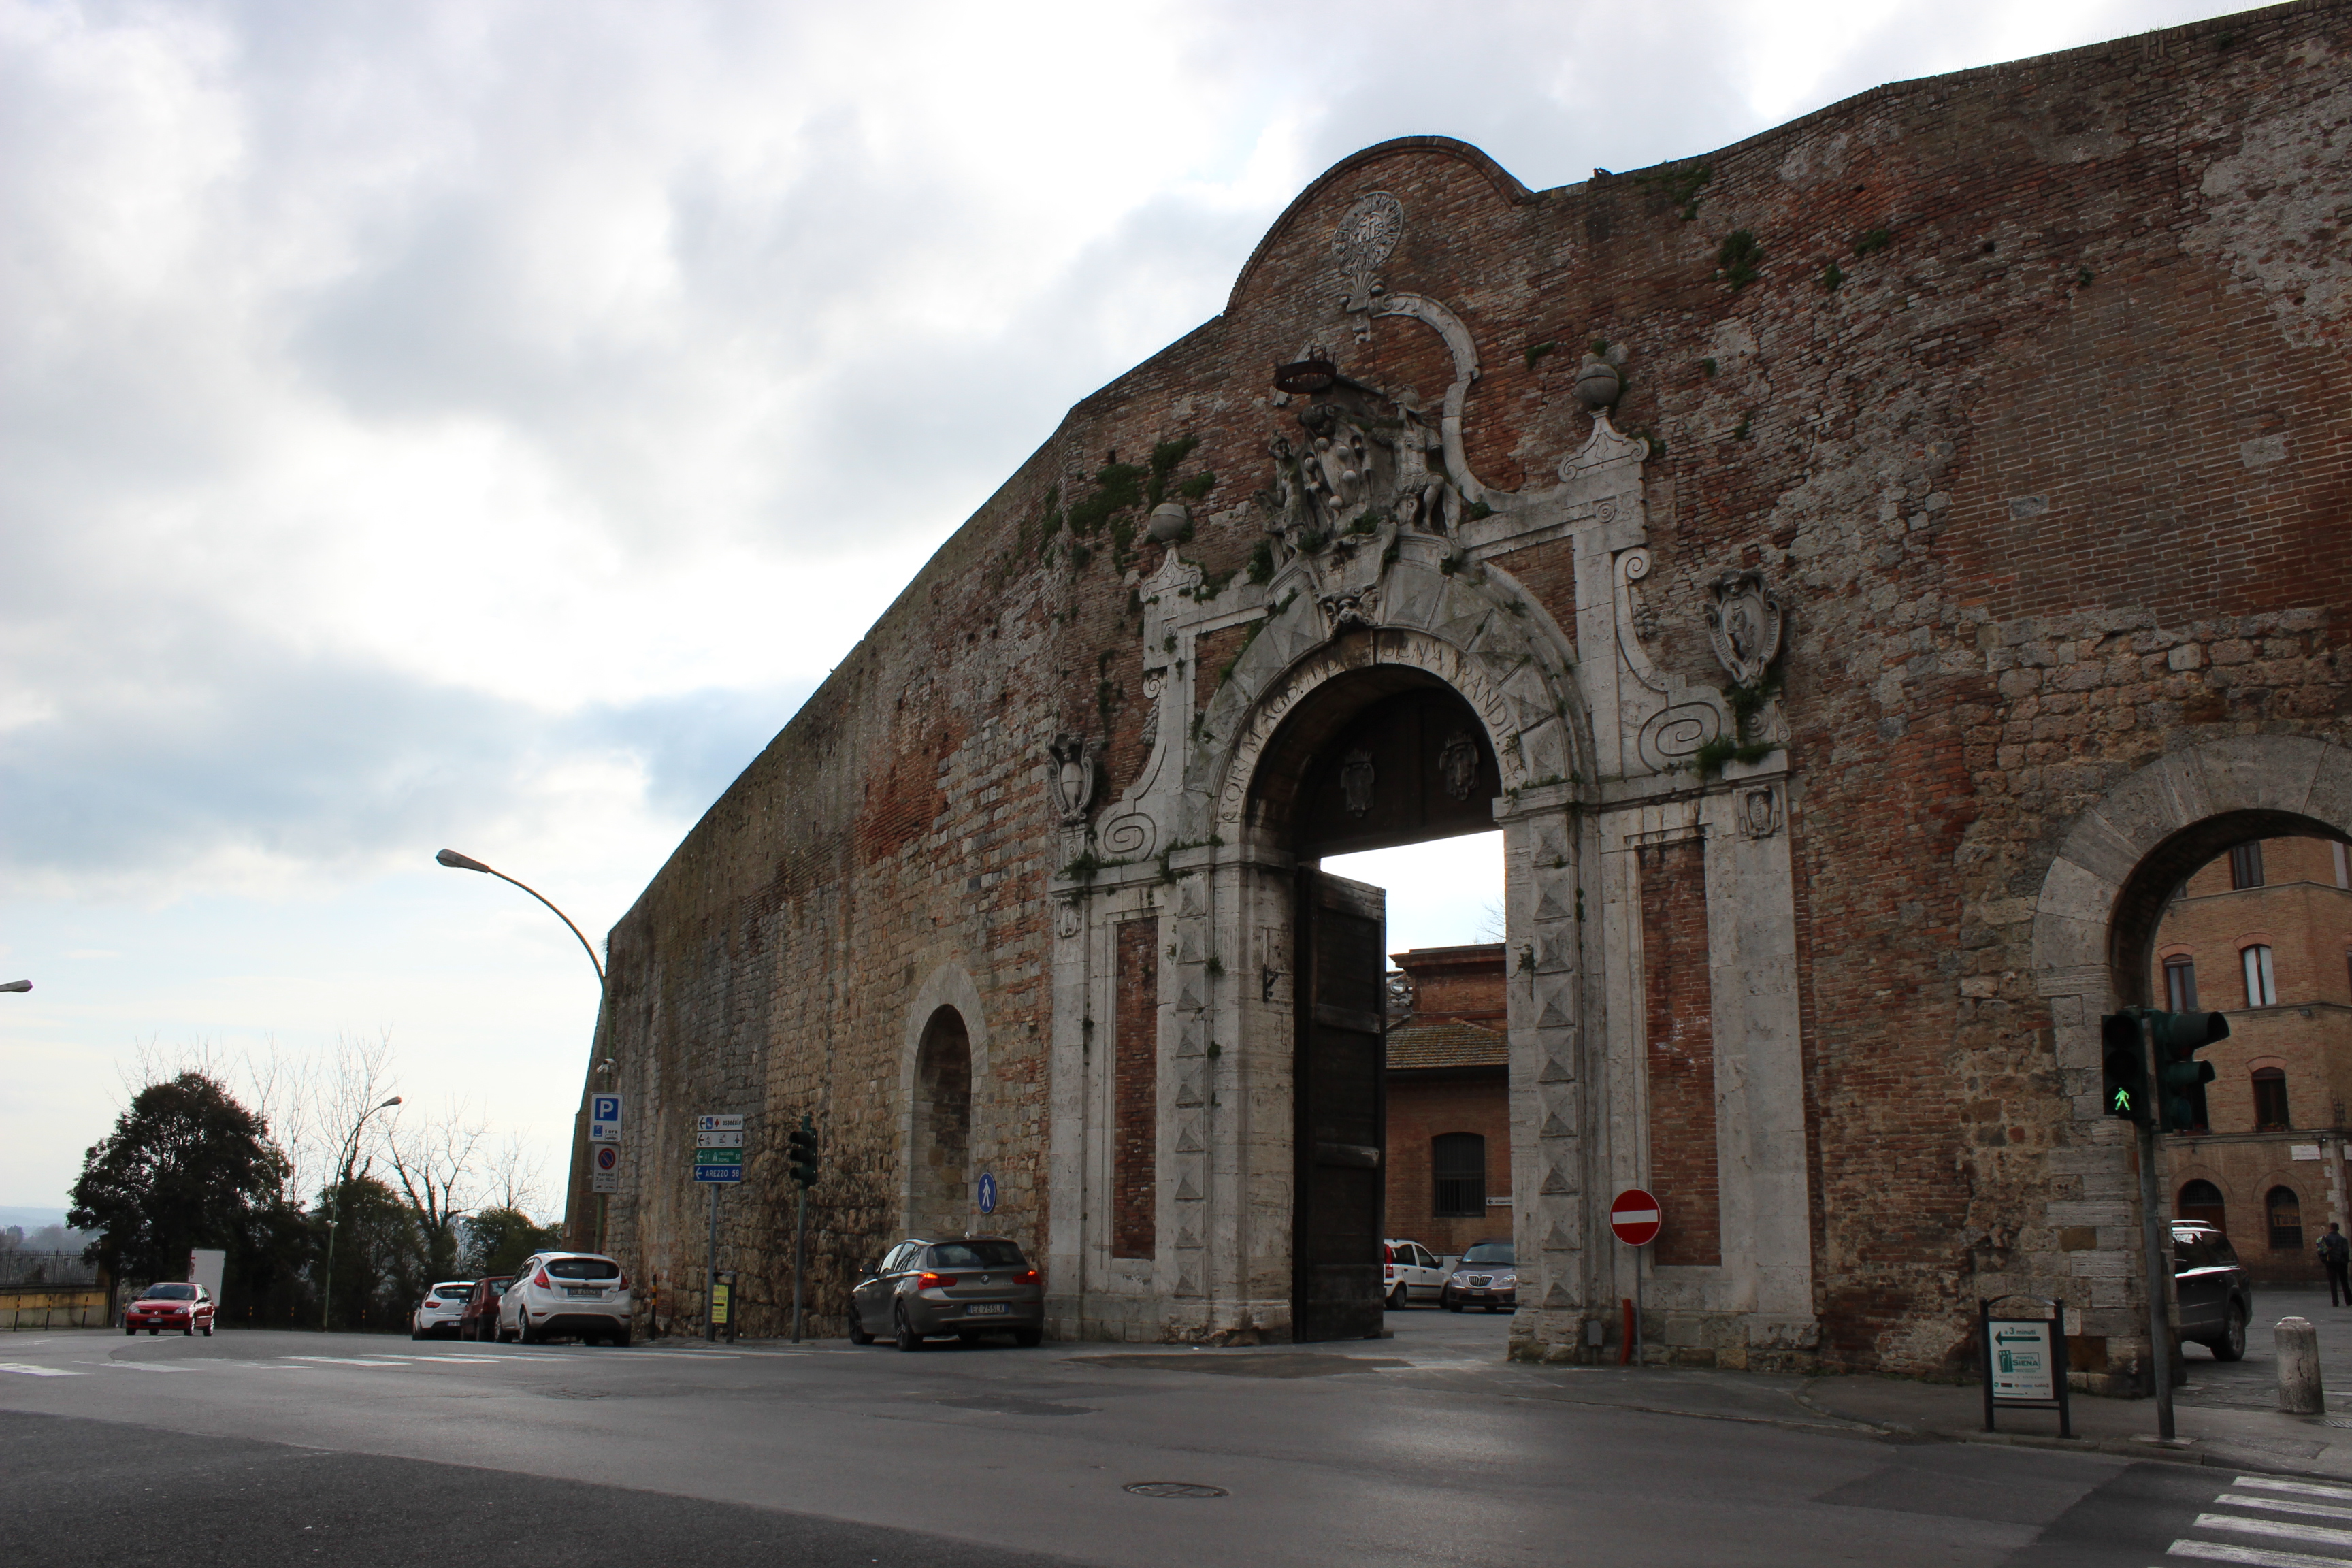 The magnificent Porta Camollia in Siena, Italy